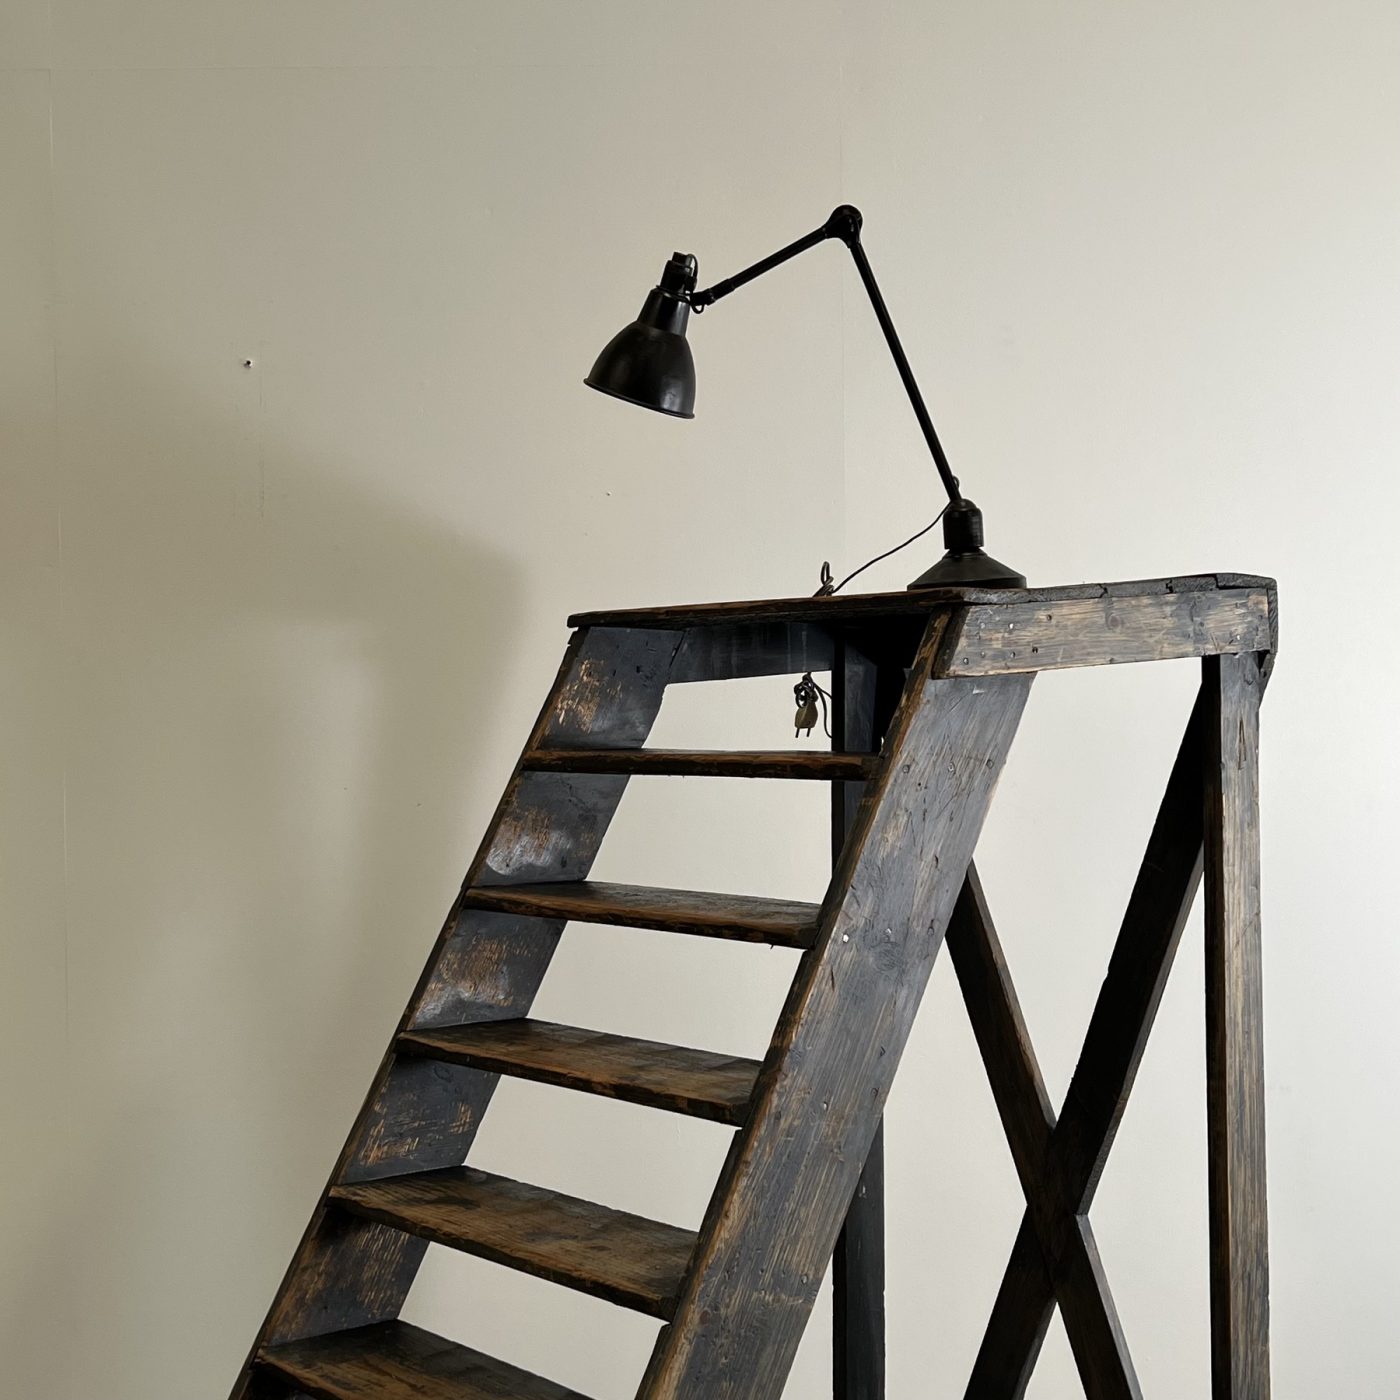 objet-vagabond-painted-ladders0001